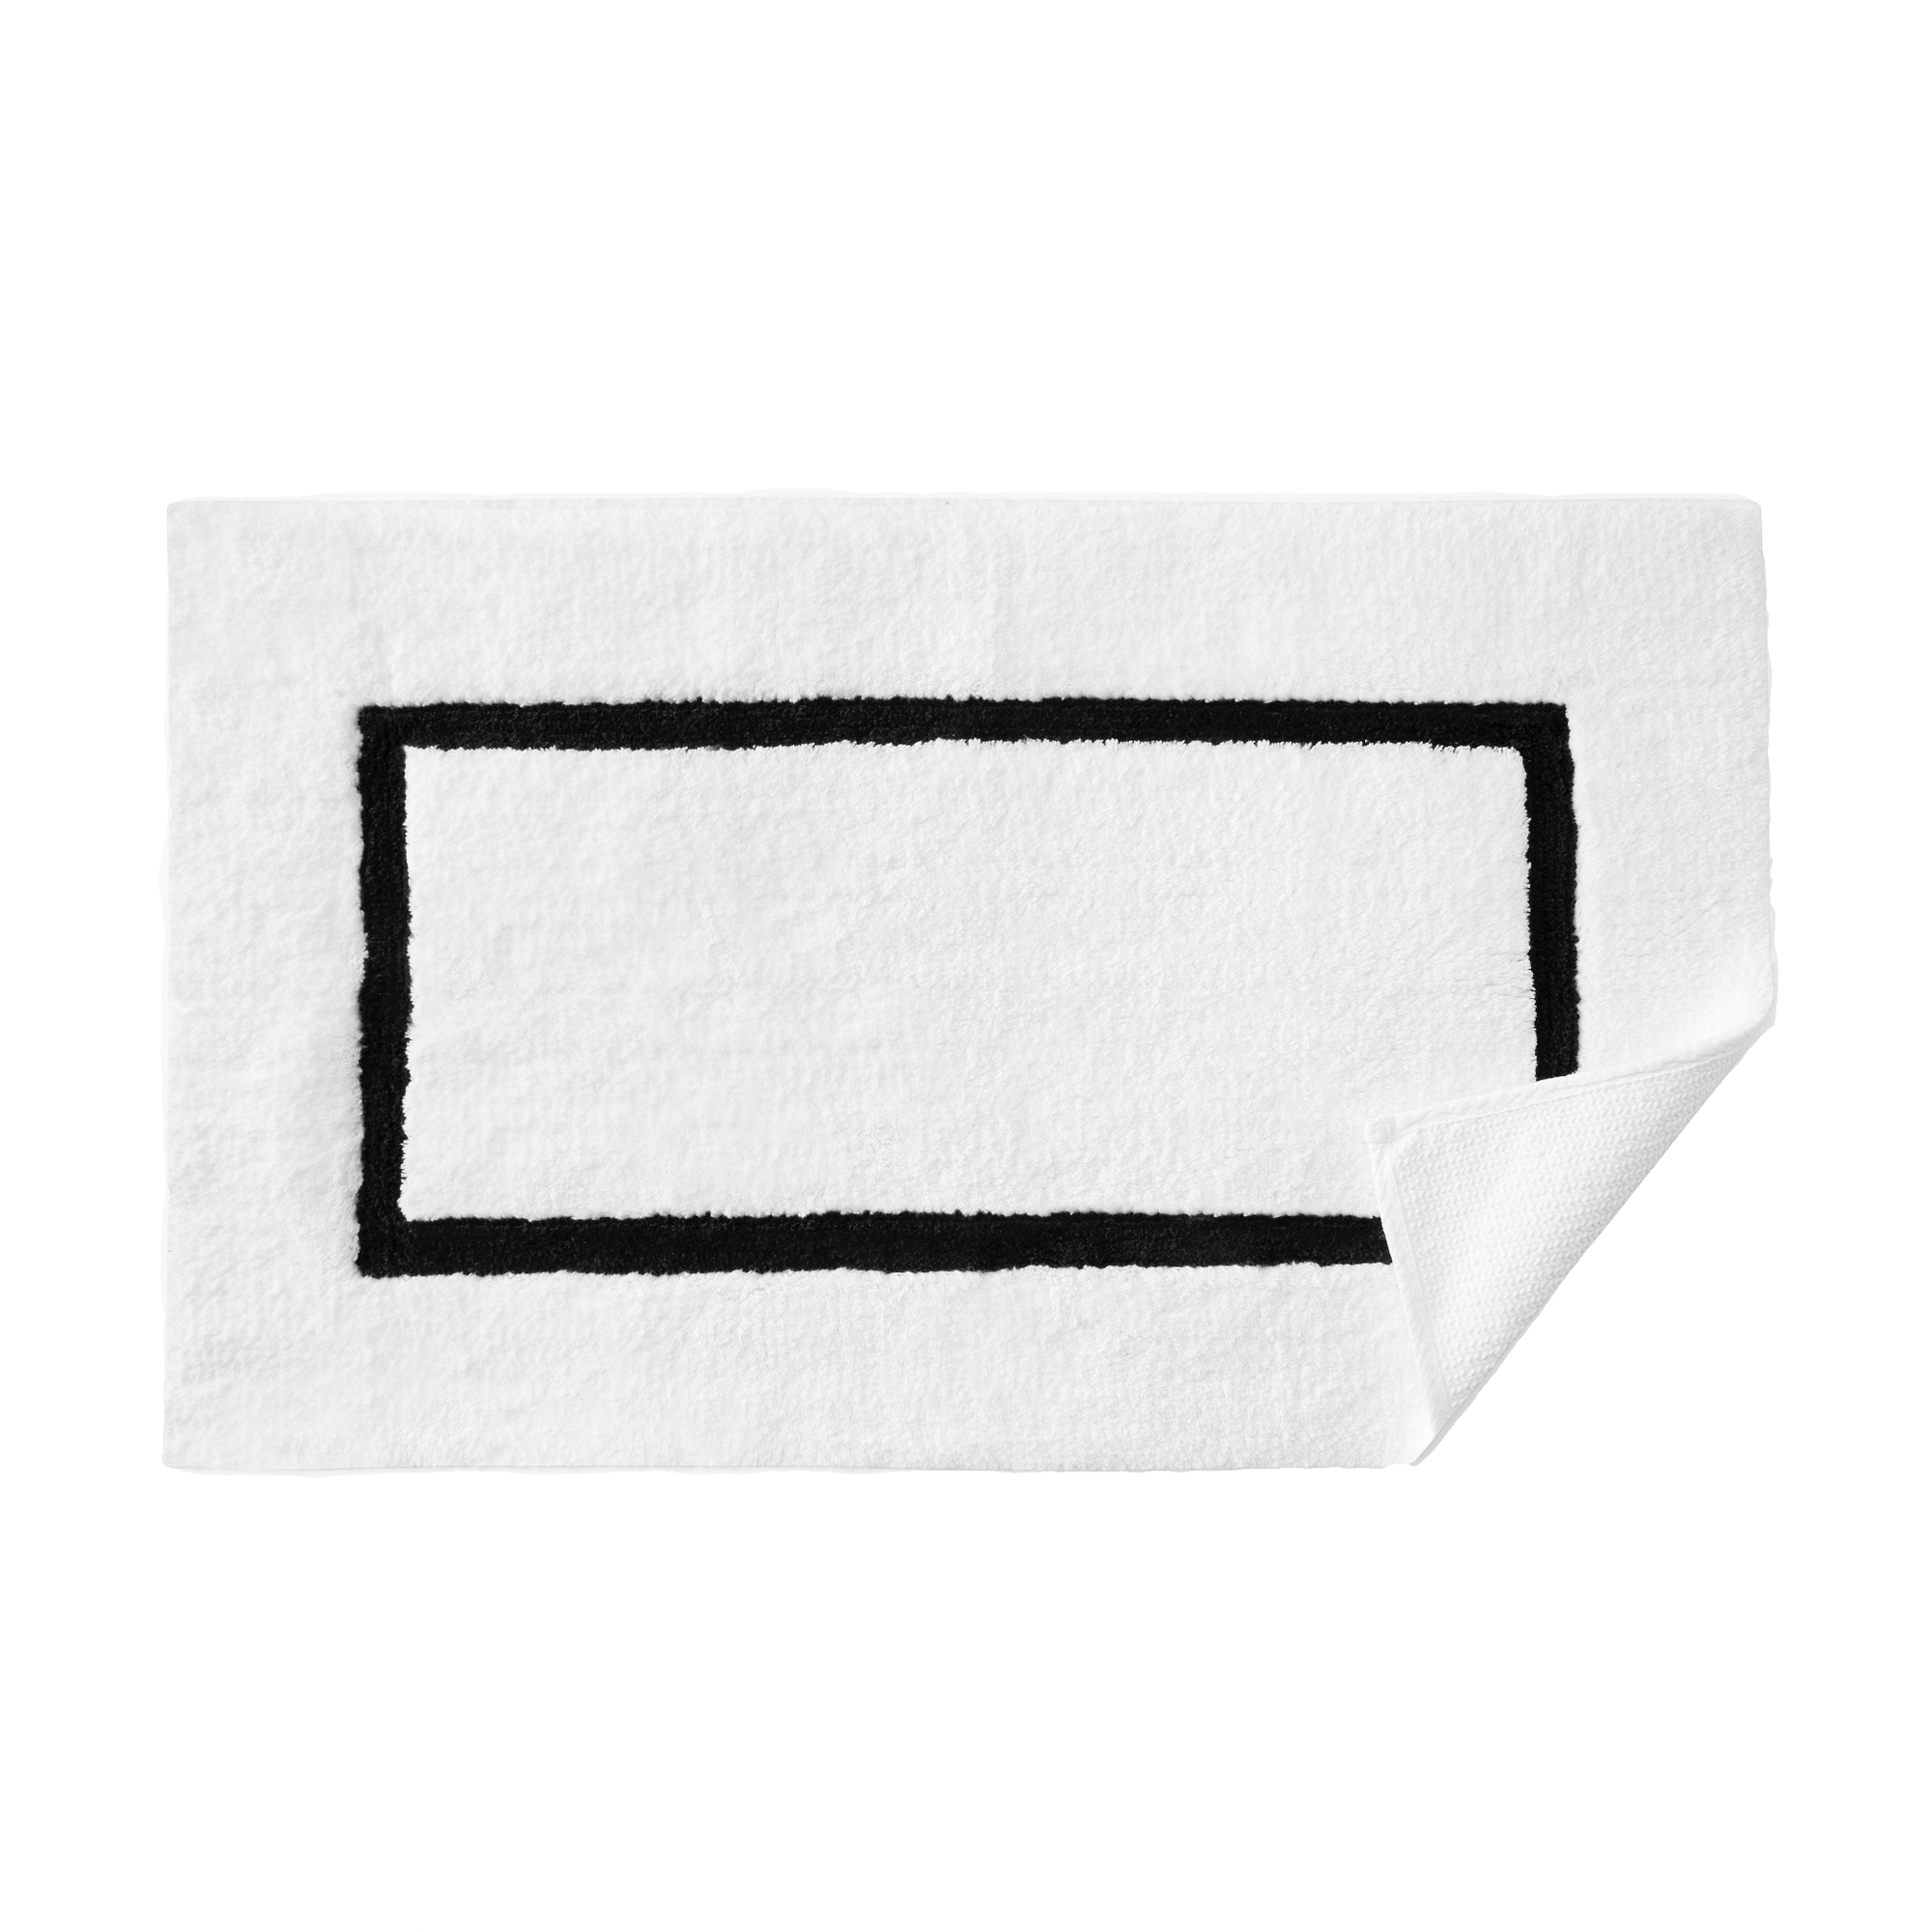 Topview of Sferra Lindo Bath Rugs in White Black Color